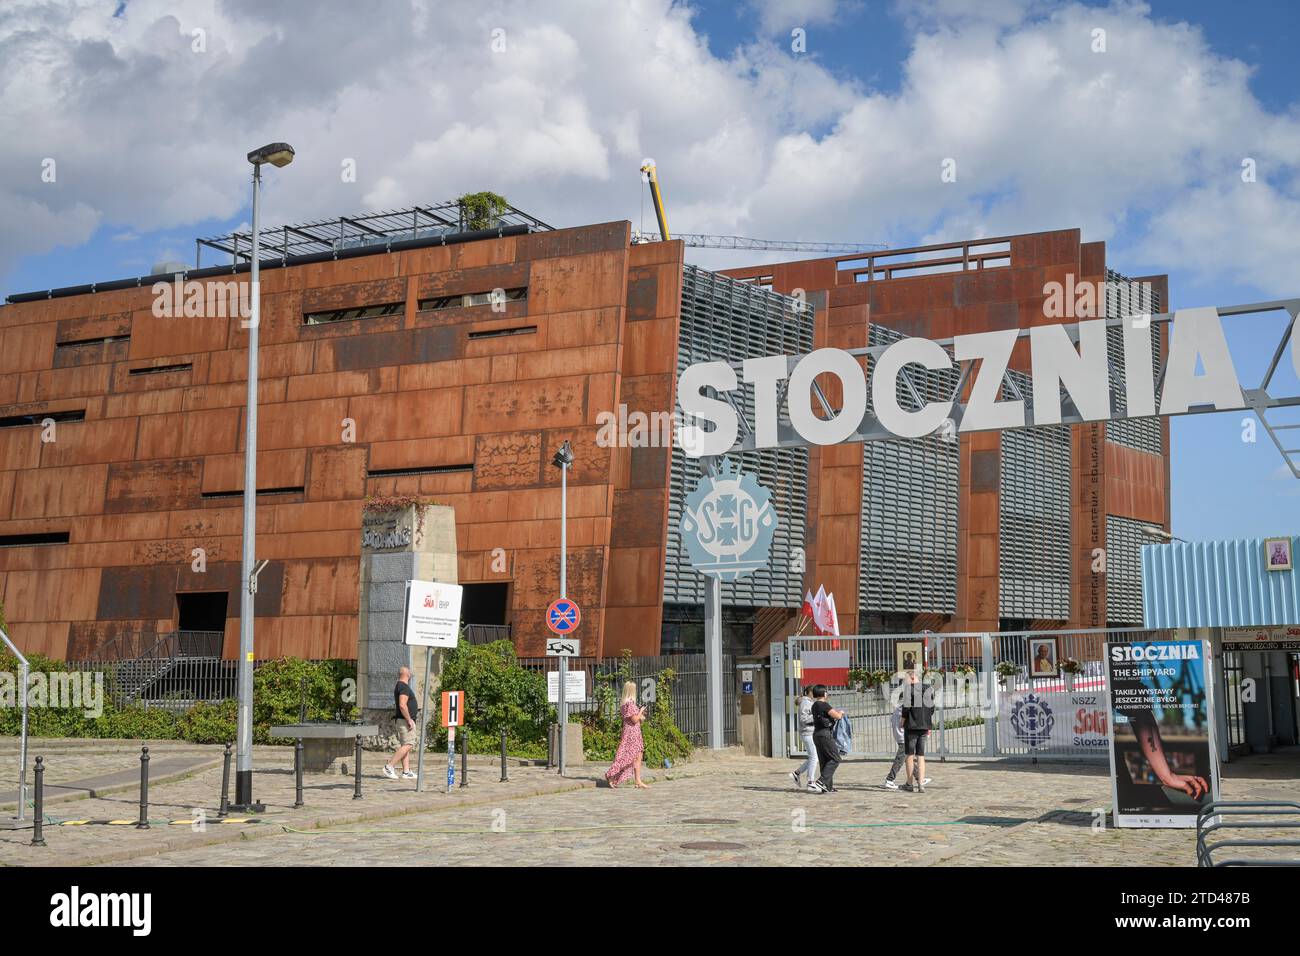 Historisches altes Werkstor der Danziger Werft, Schriftzug Stocznia Gdańsk, Eingang Europäisches Zentrum der Solidarität - Europejskie Centrum Solidar Stock Photo